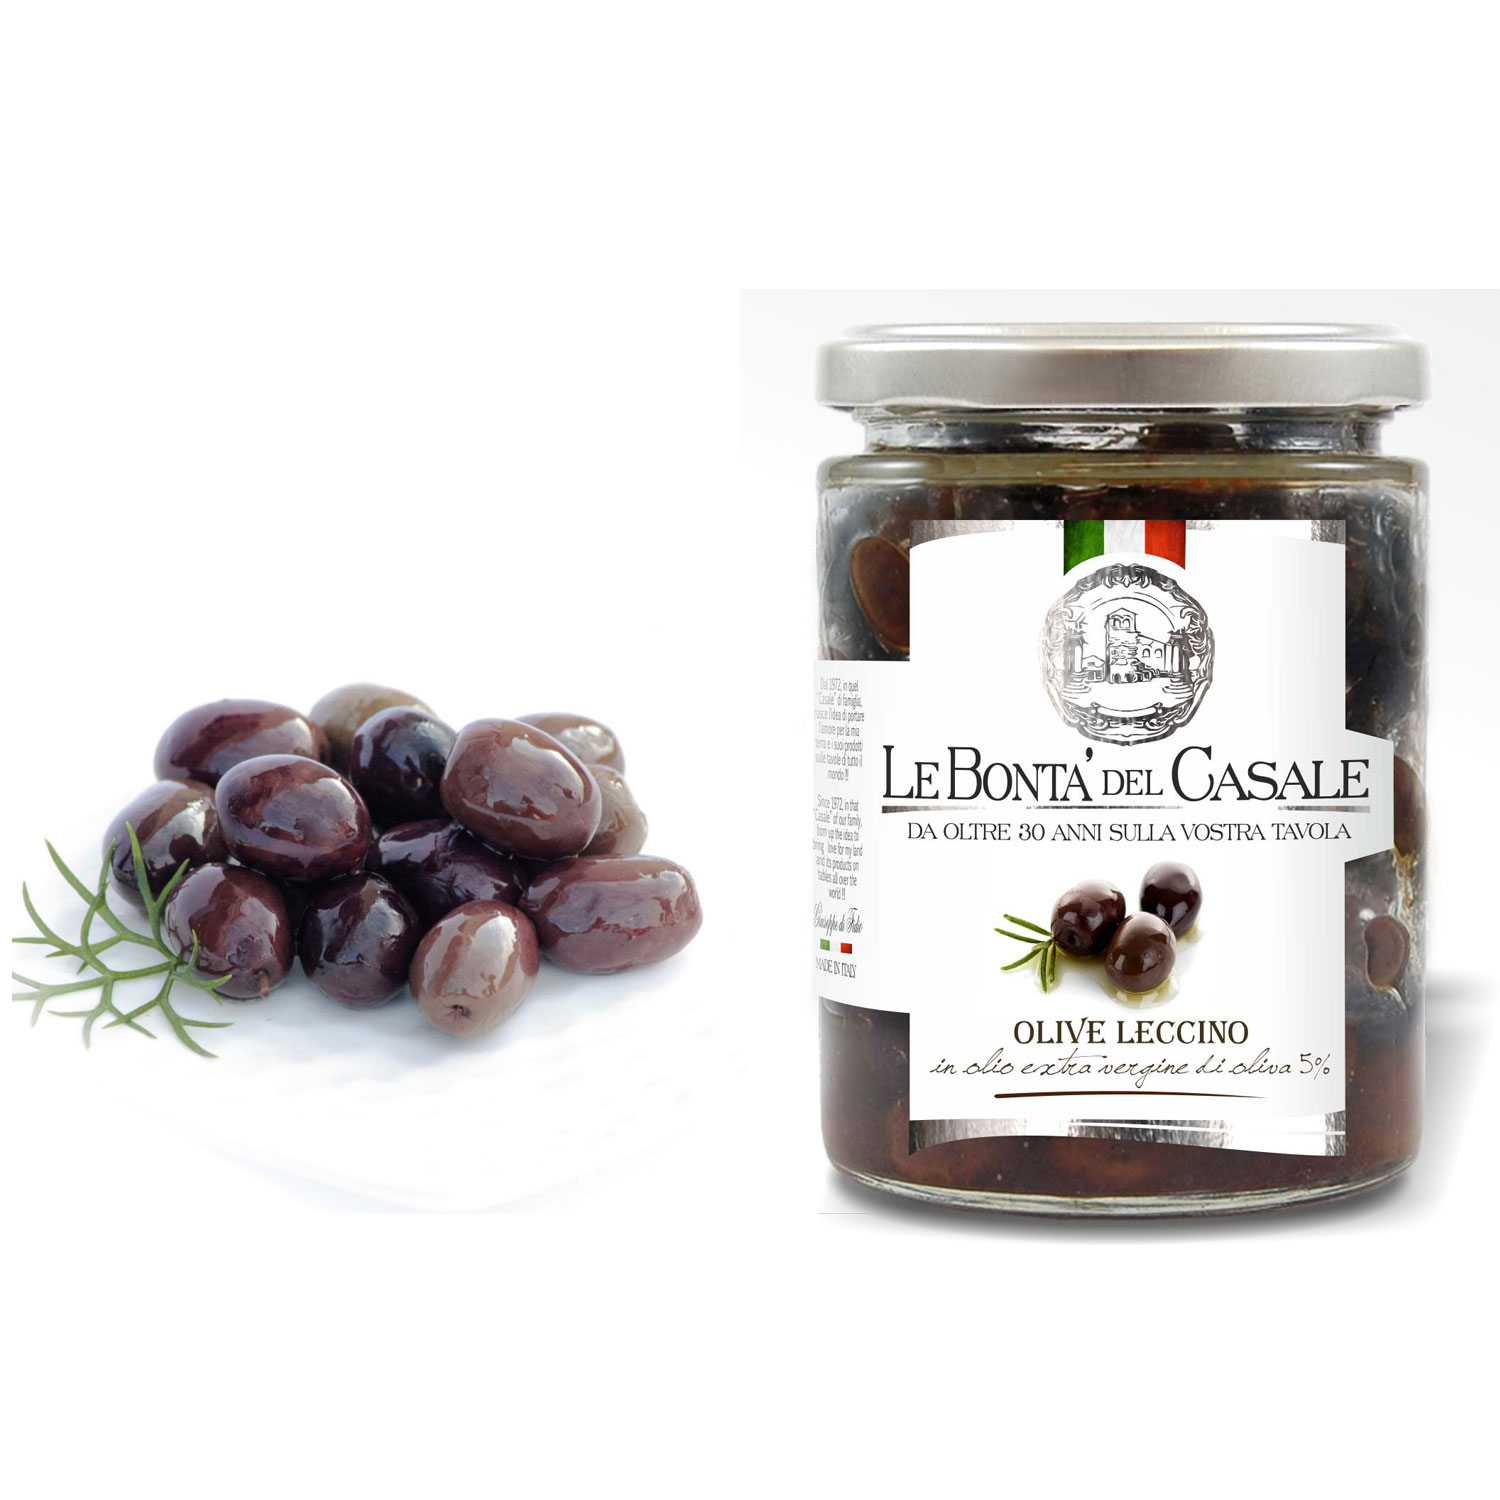 Оливки сорта "Леччино" в оливковом масле extravirgin